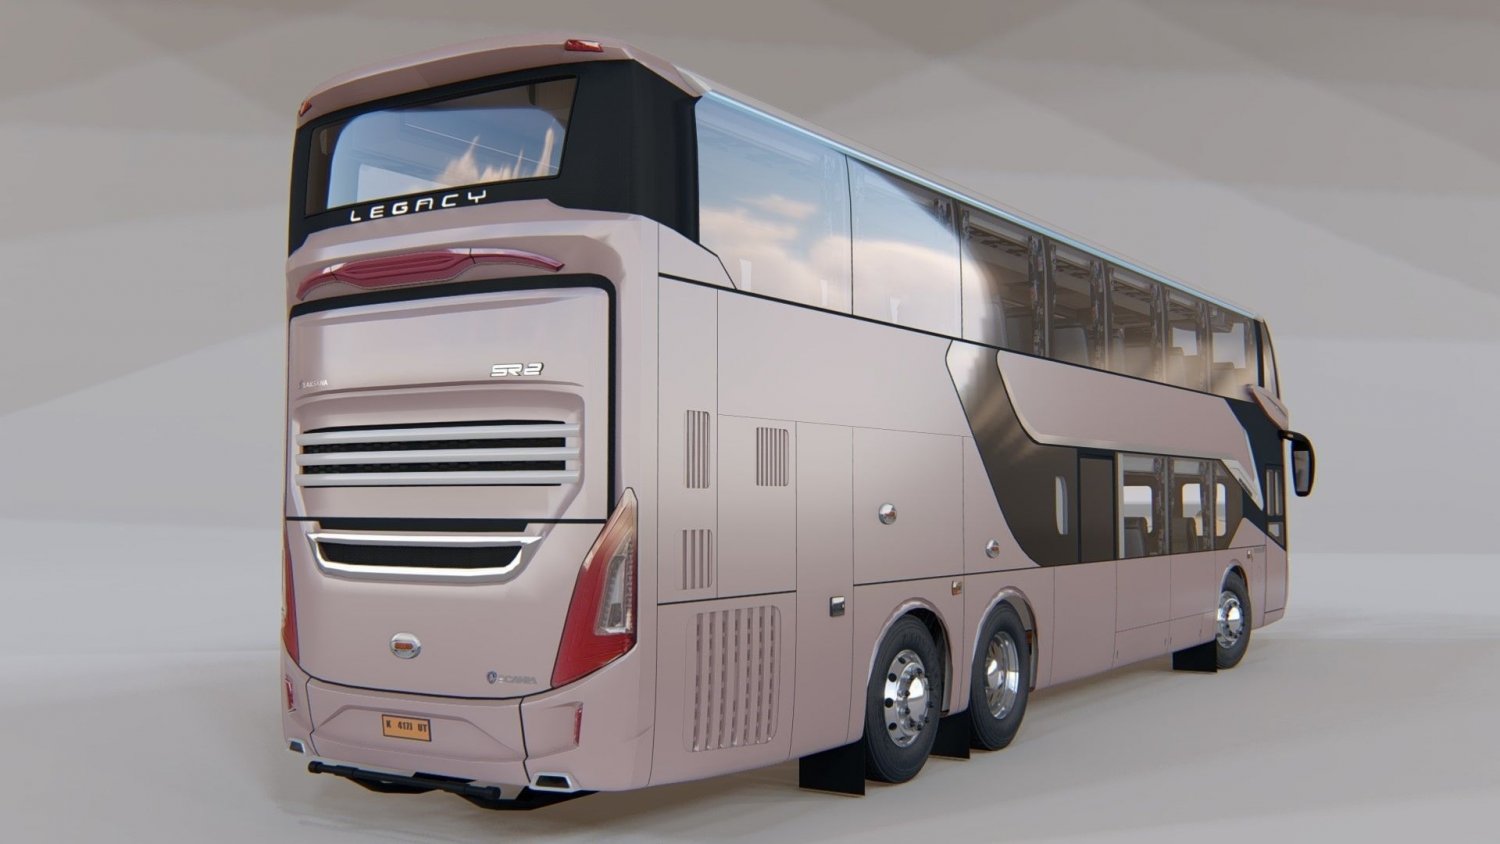 double decker bus conversion